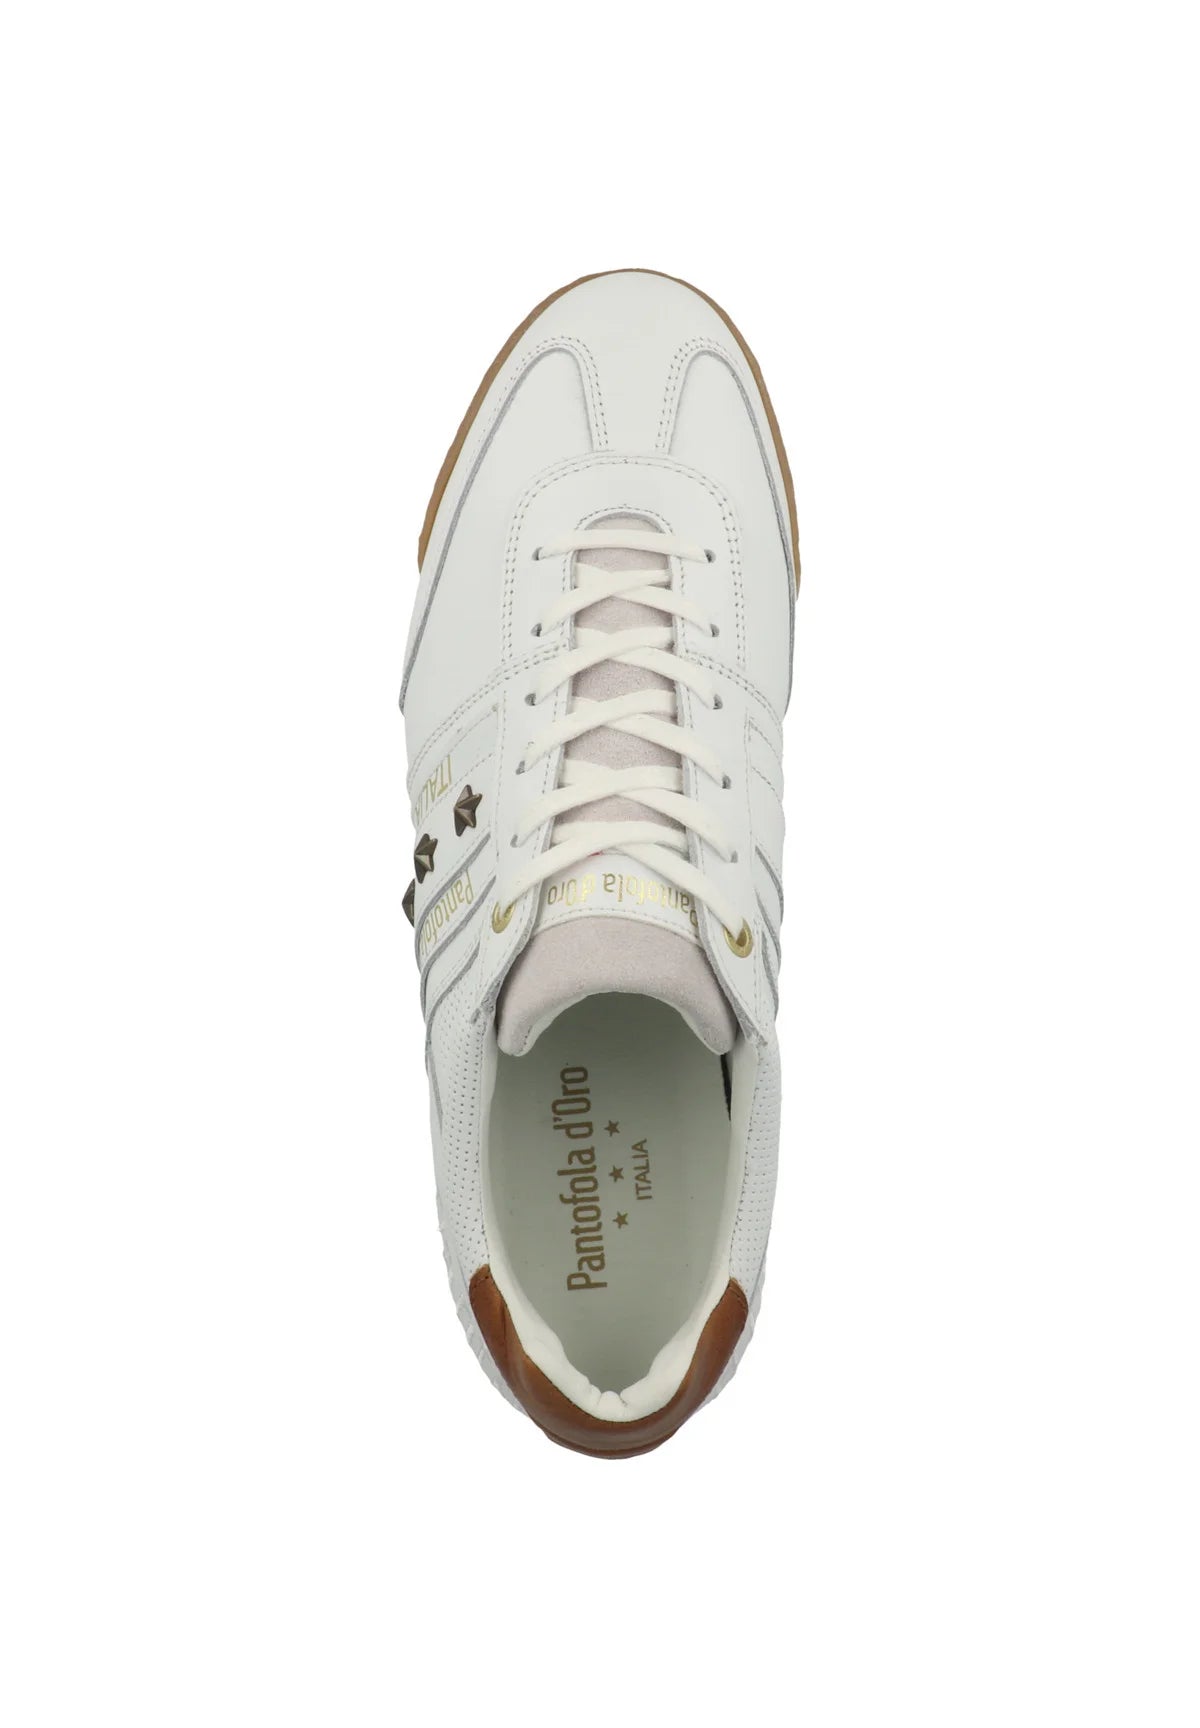 Pantofola d'Oro Imola Classic 2.0 Uomo Low Bright White Leather